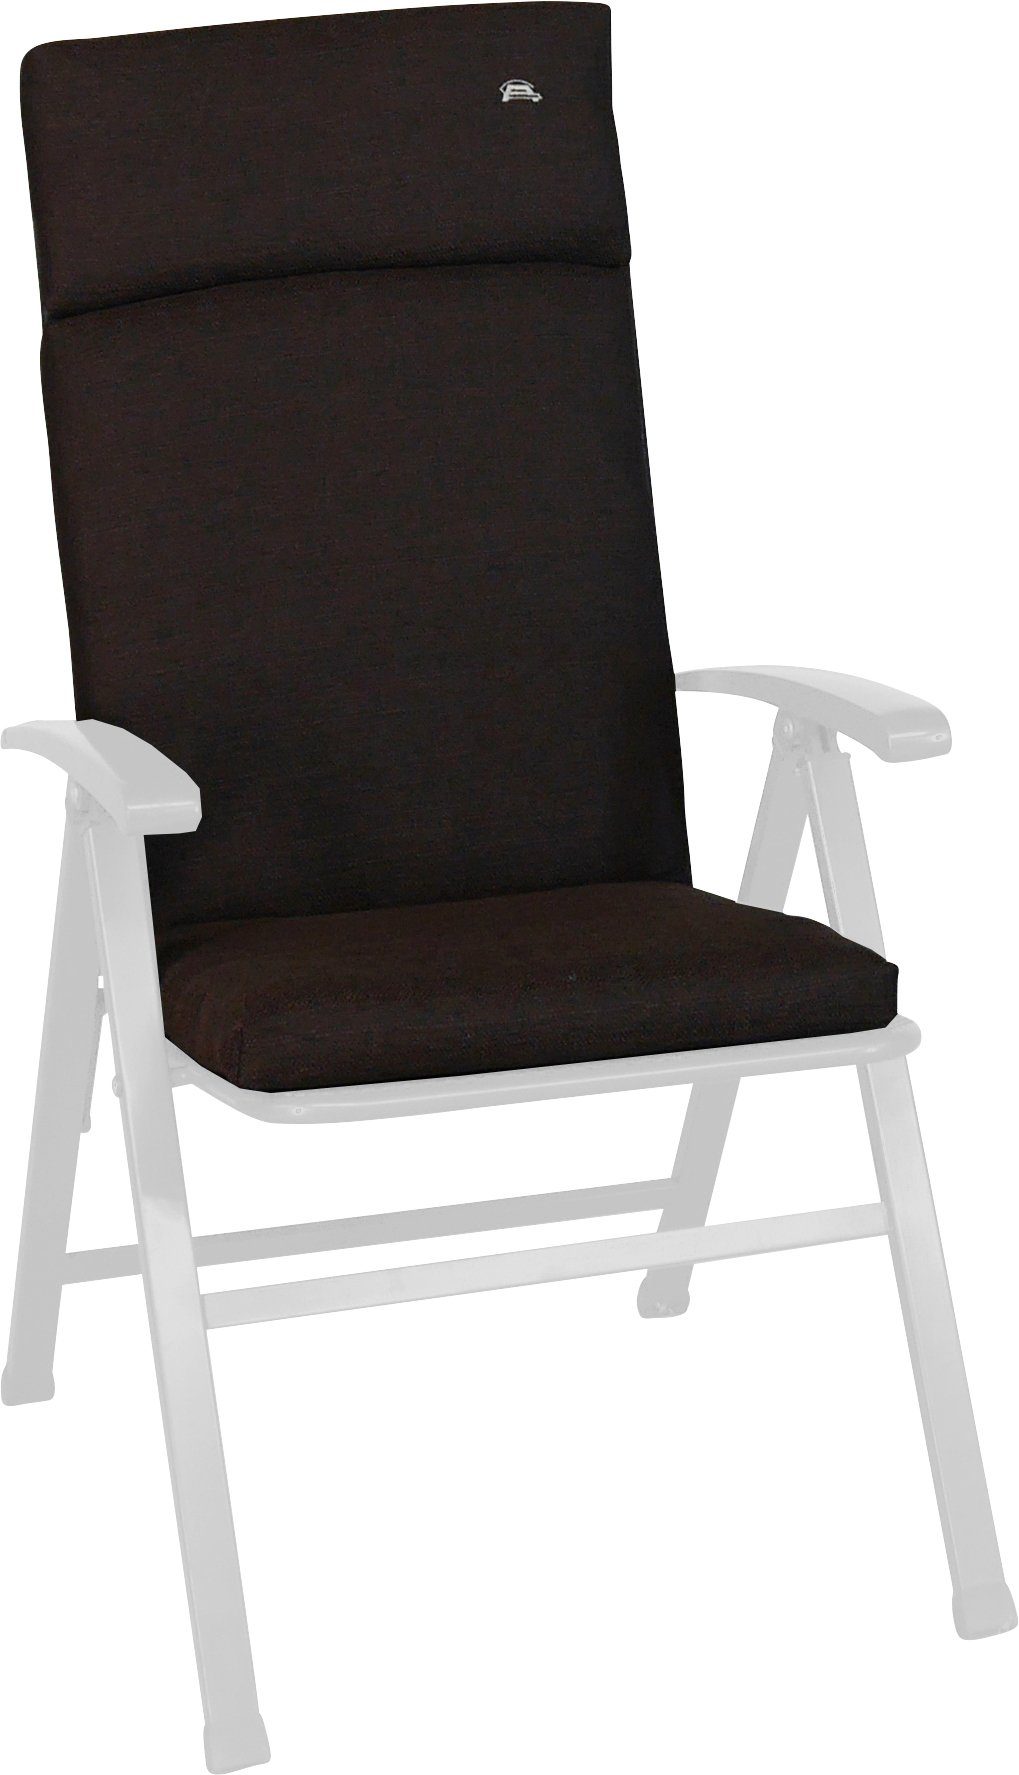 Angerer Freizeitmöbel Sesselauflage Smart, ca. cm (B/T): 47x112 braun